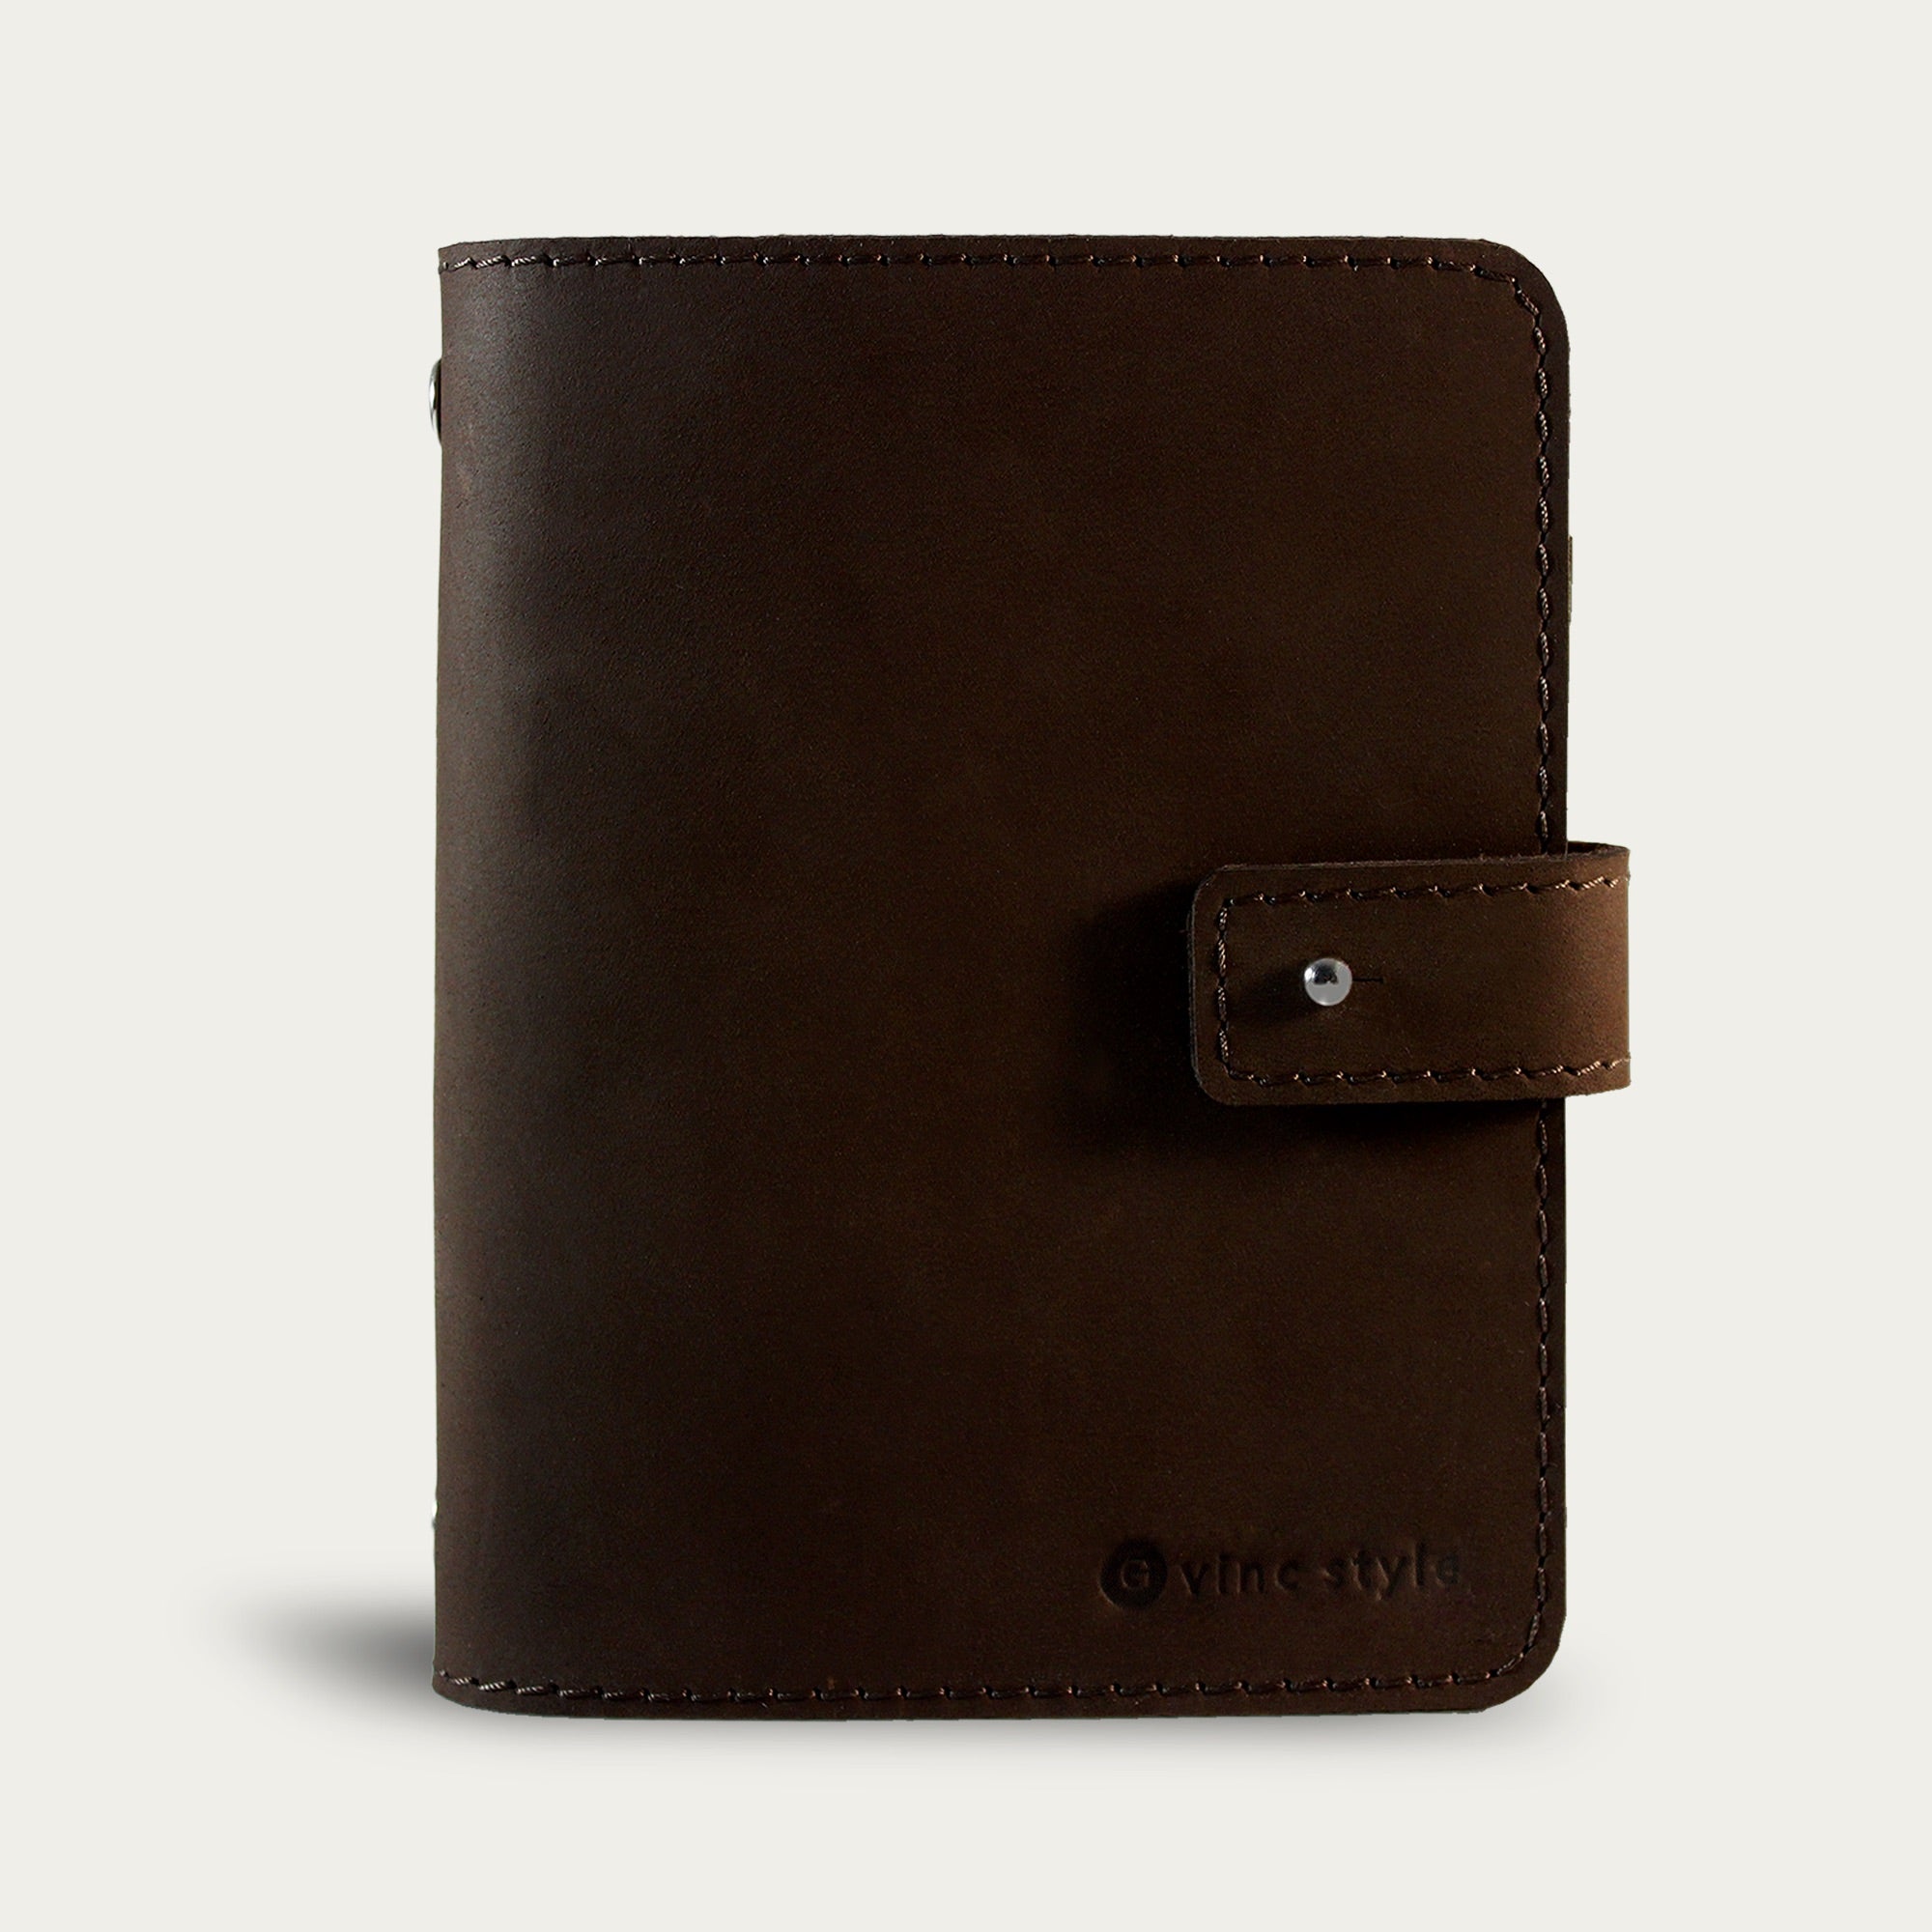 สมุดโน๊ต รุ่น Cinnamon Notebook (S) | มี 2 สี